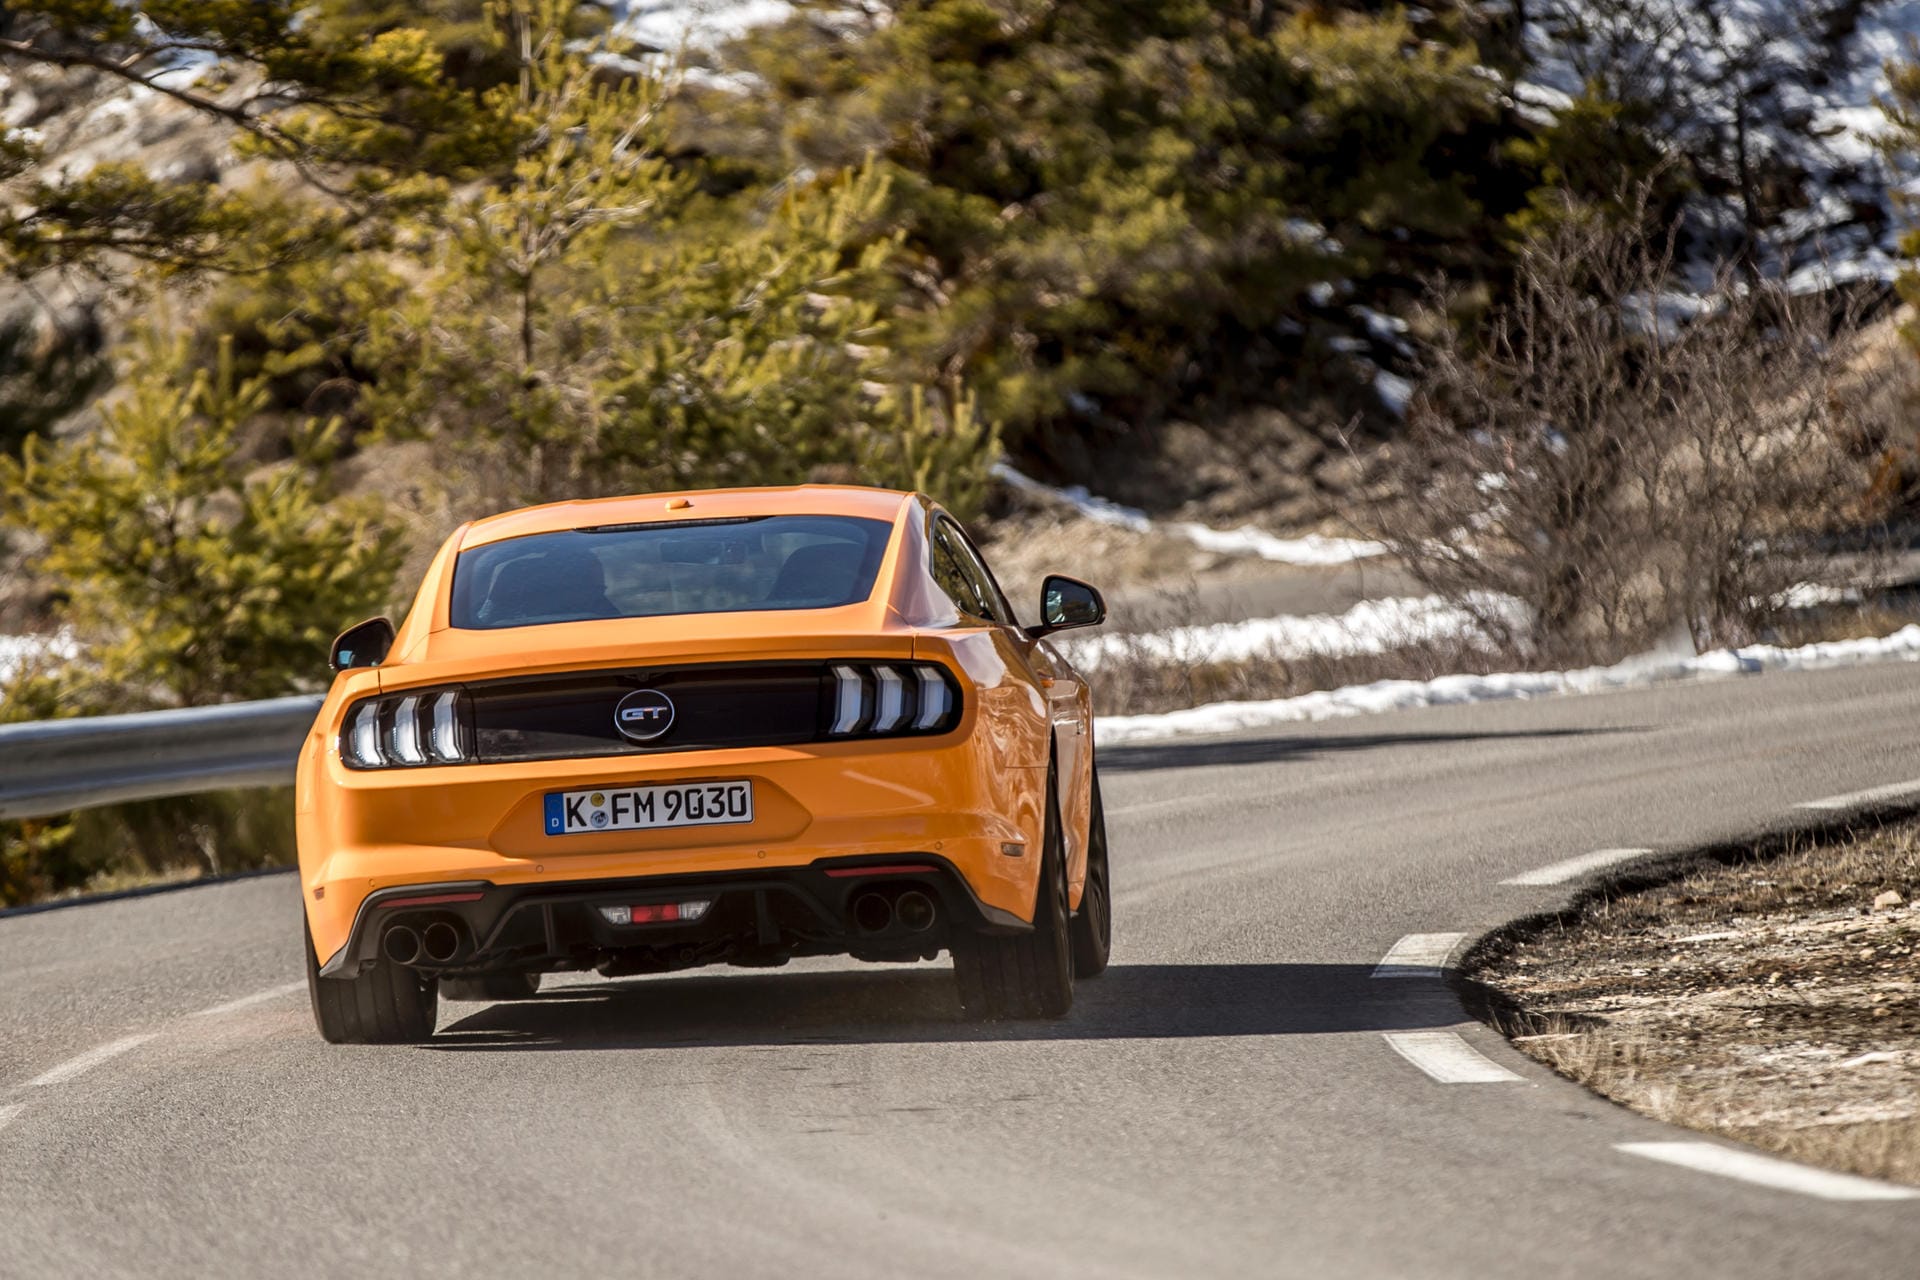 Heckpartie des neuen Mustang: Das Topmodell hat nun vier Auspuffendrohre.